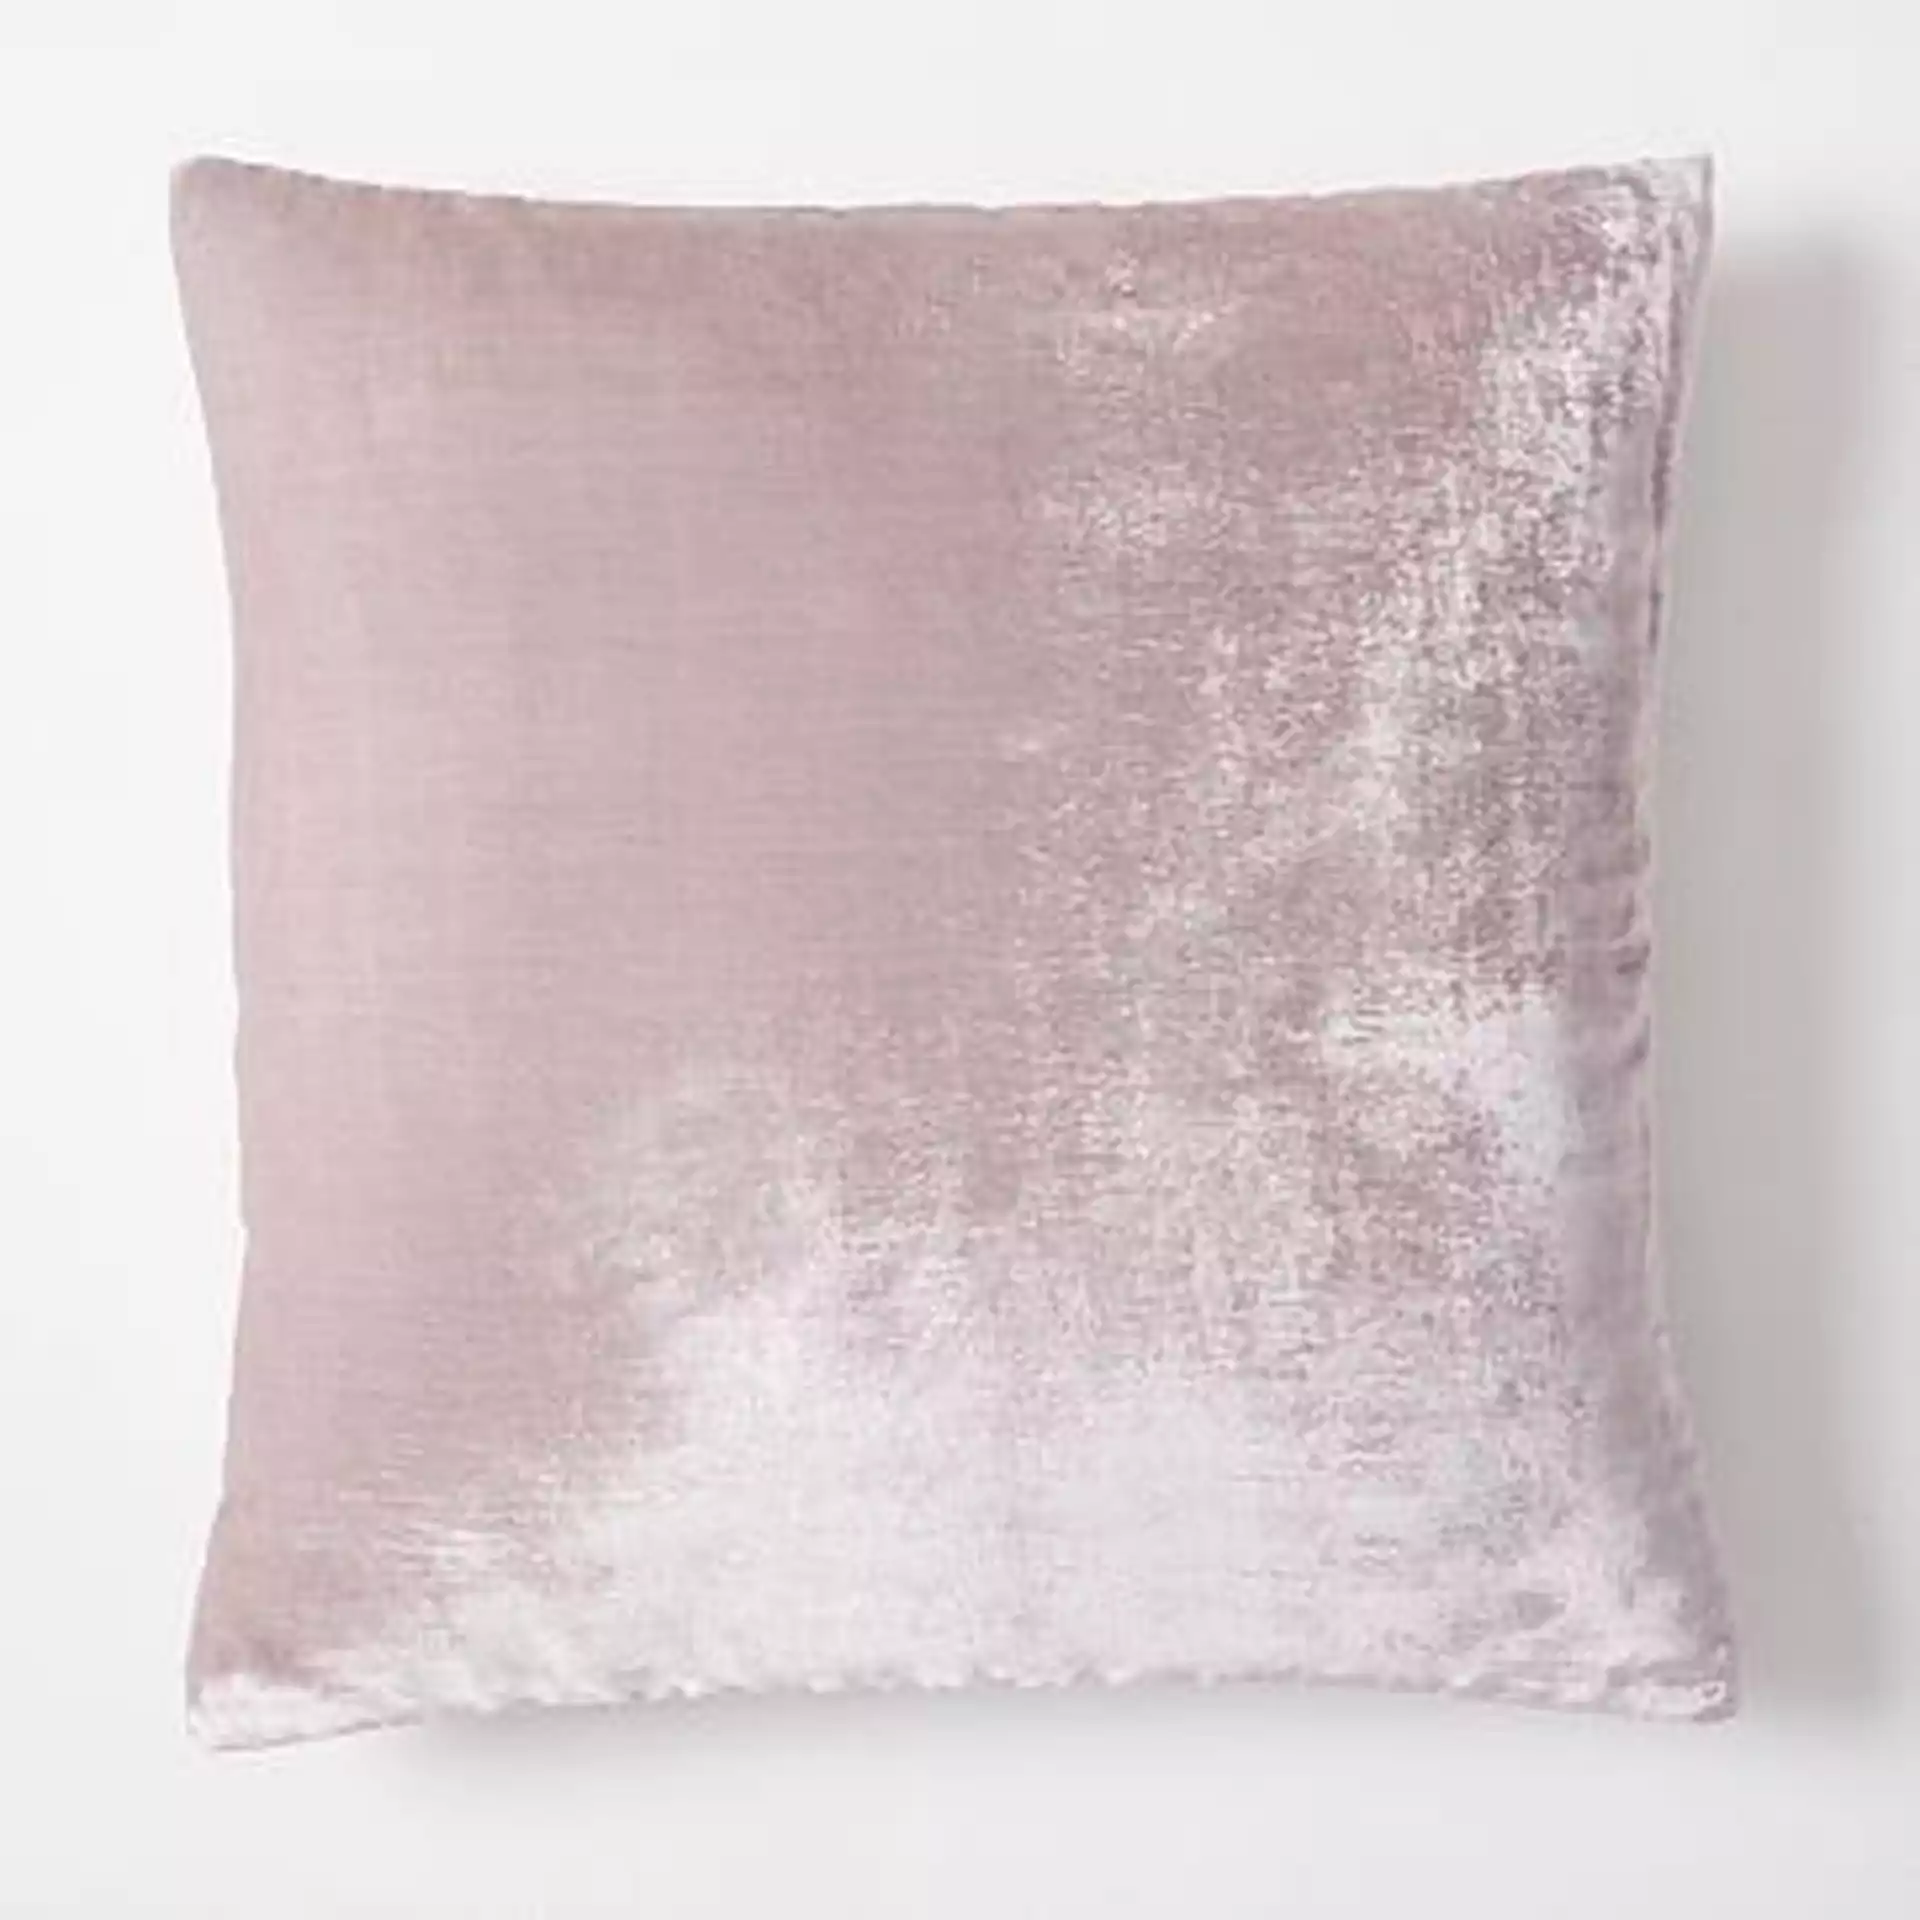 Lush Velvet Pillow Cover, 12"x21", Copper, Set of 2